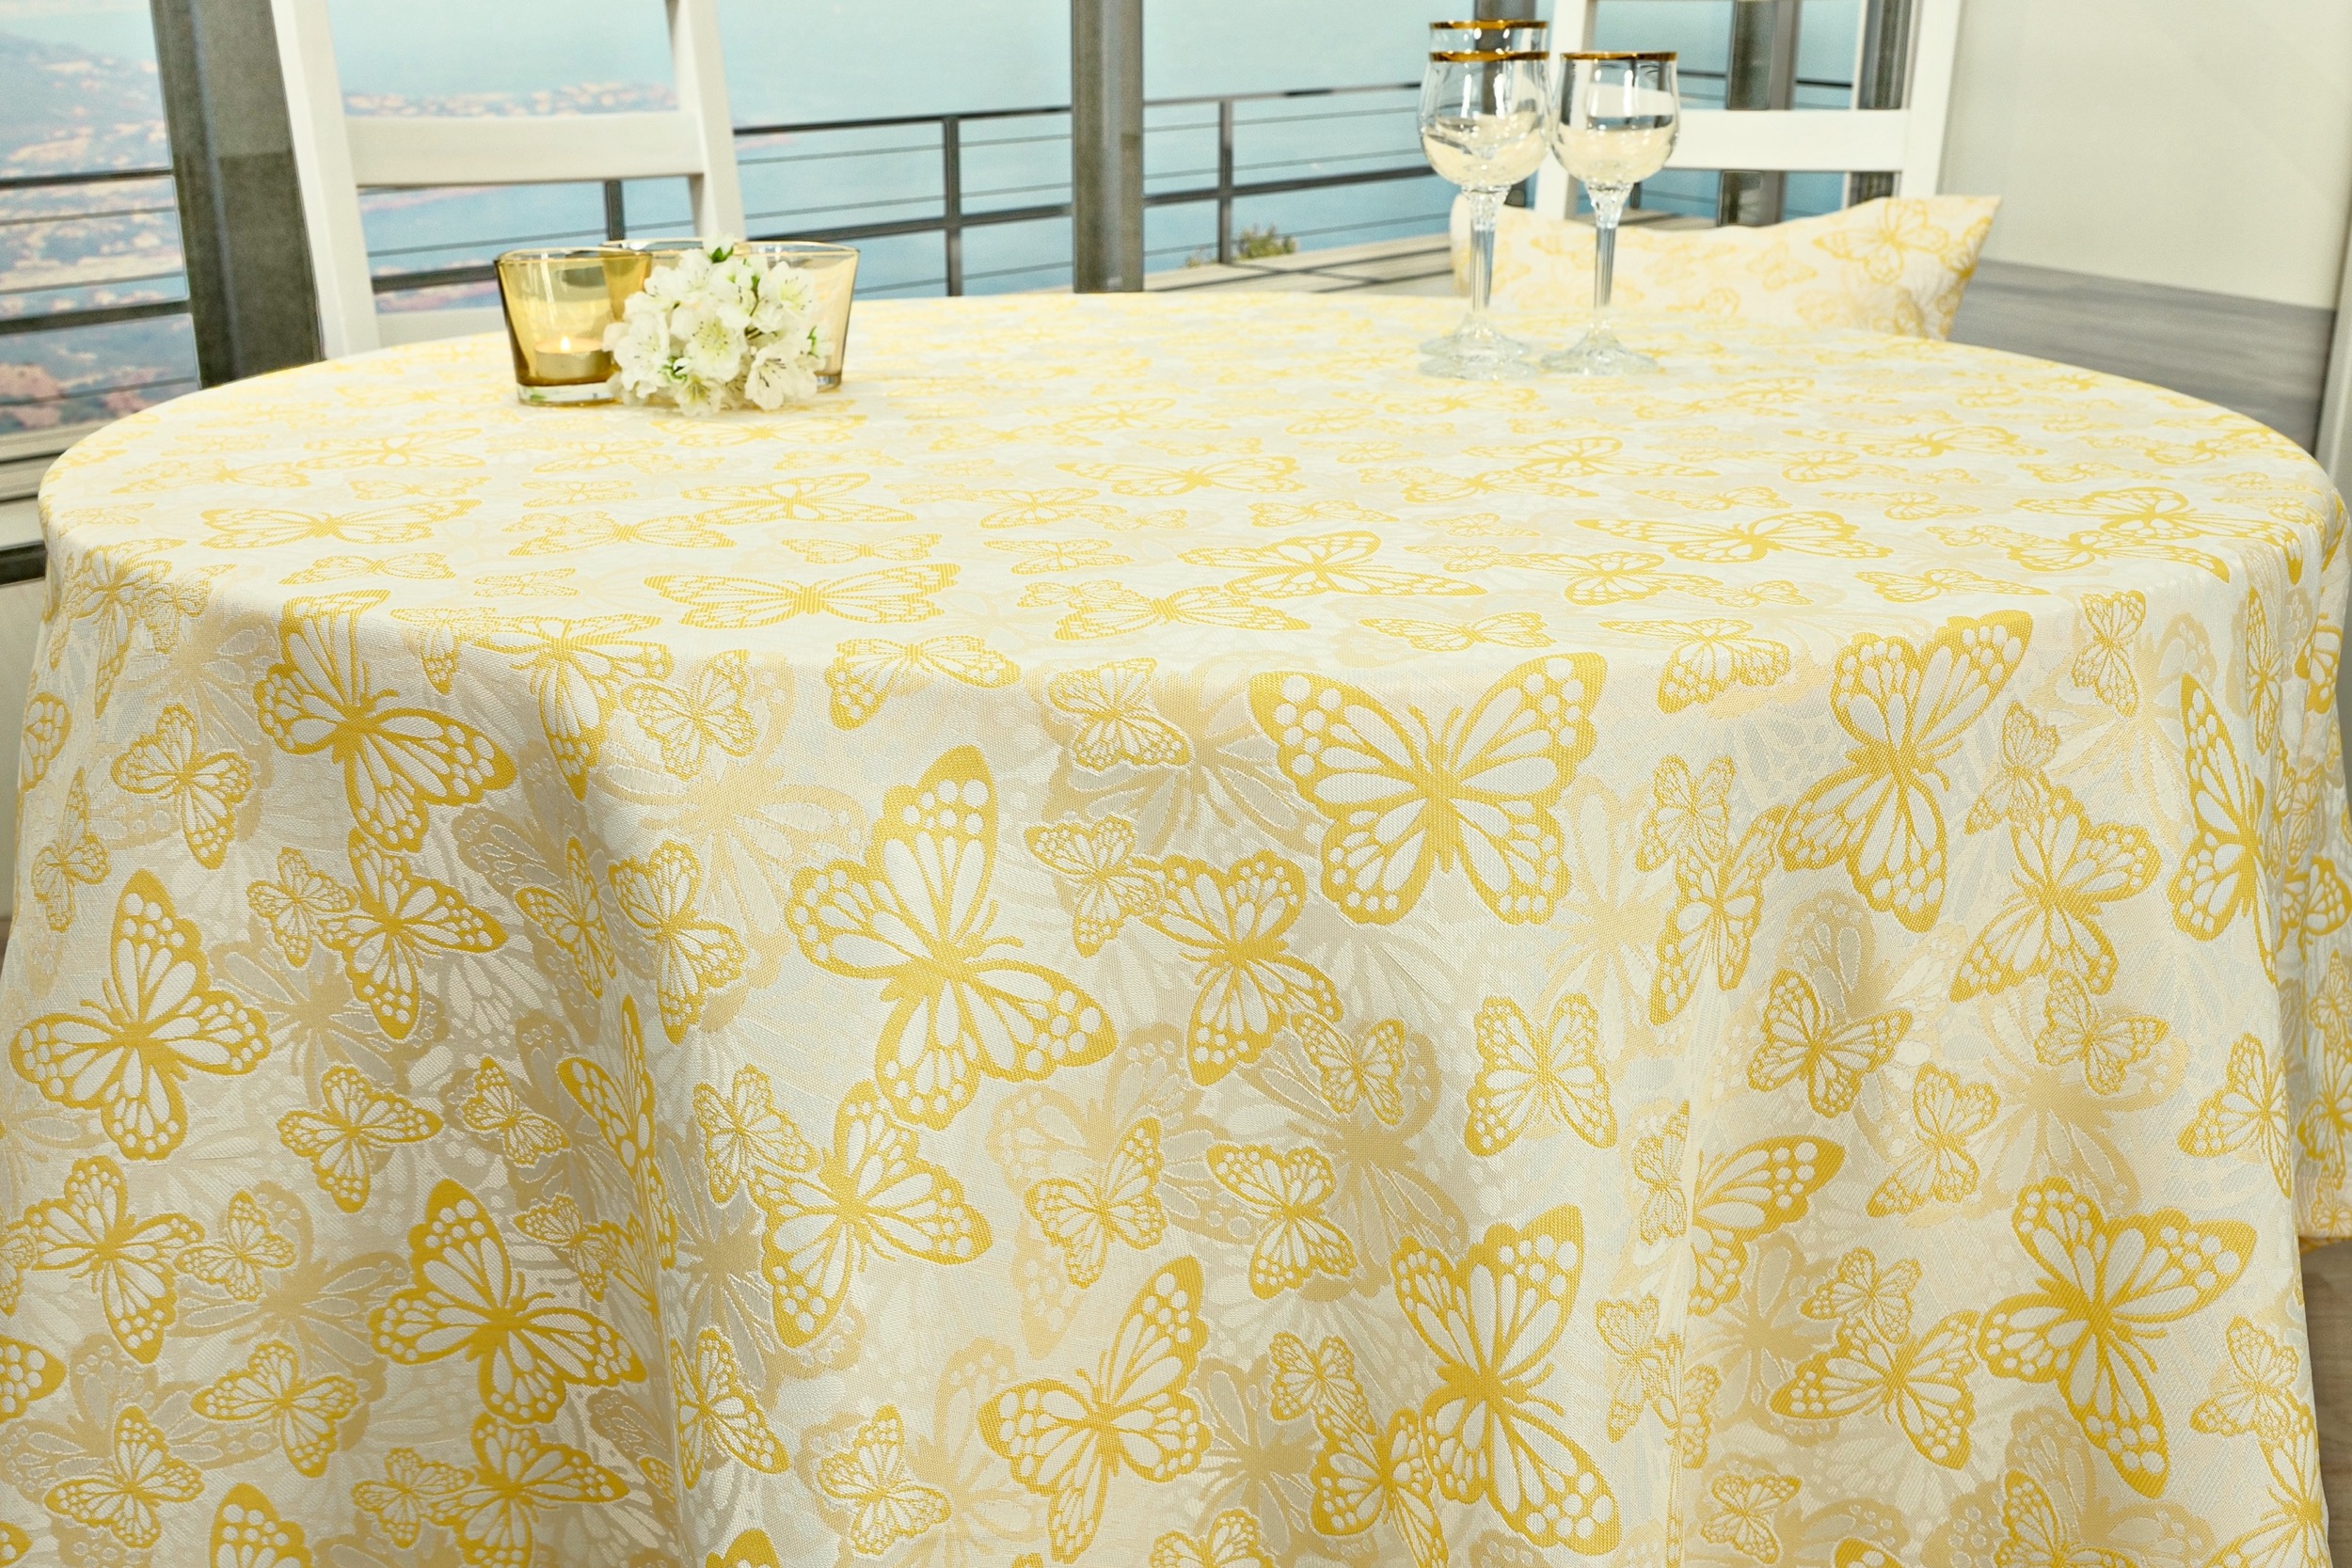 Fleckgeschützte Tischdecke Weiß Gelb Muster Springtime ab 80 cm bis 160 cm RUND